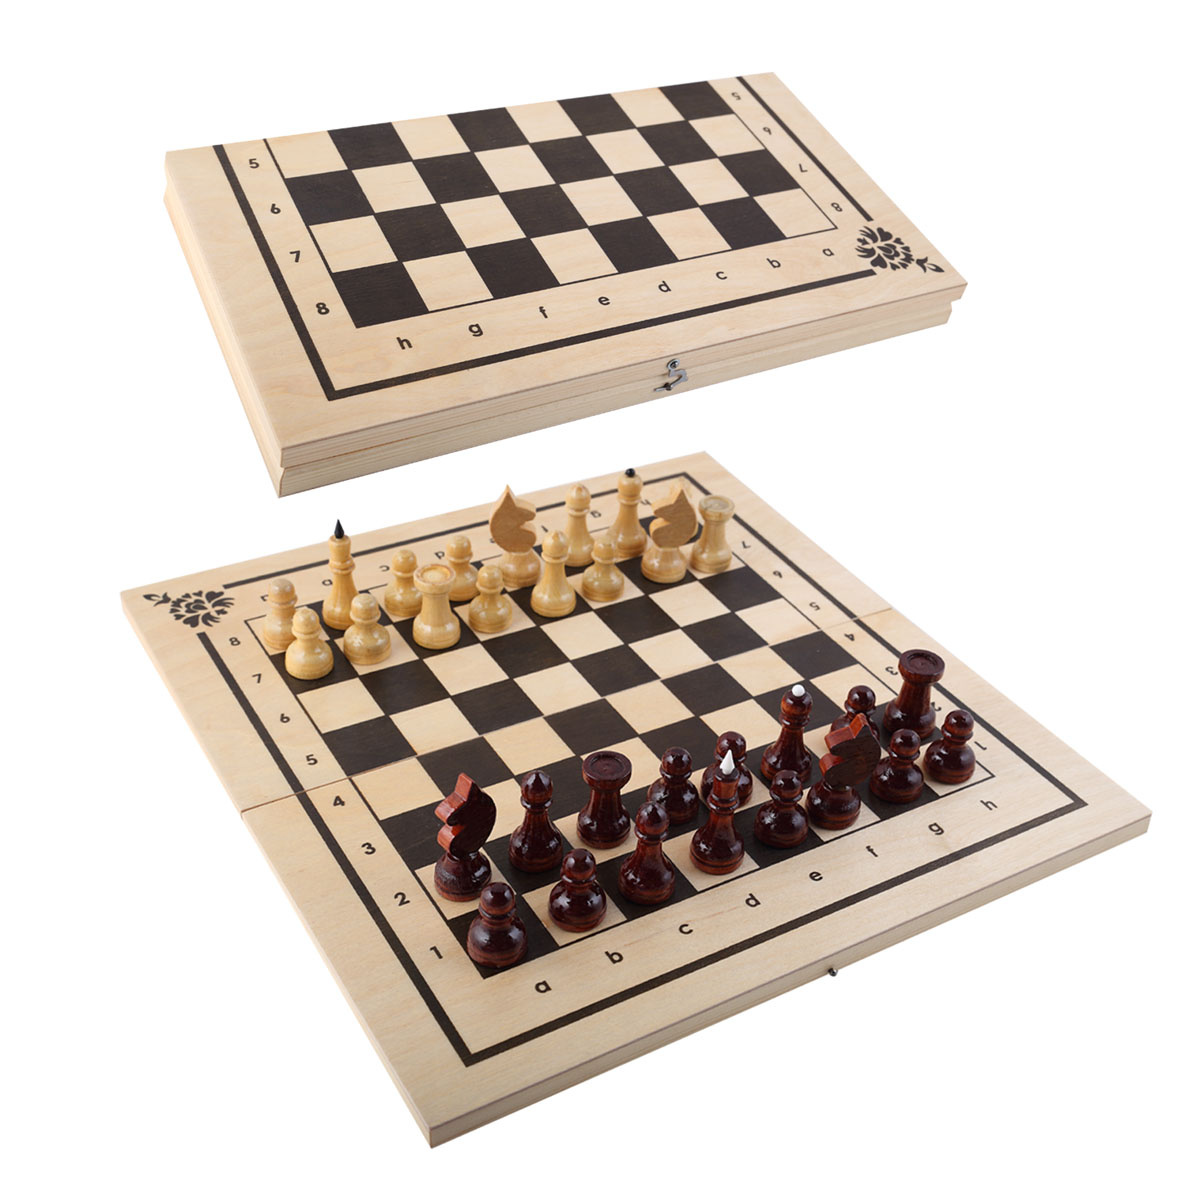 Игра ИН-7510 Нарды, шашки, шахматы 400х10мм - Нижнекамск 